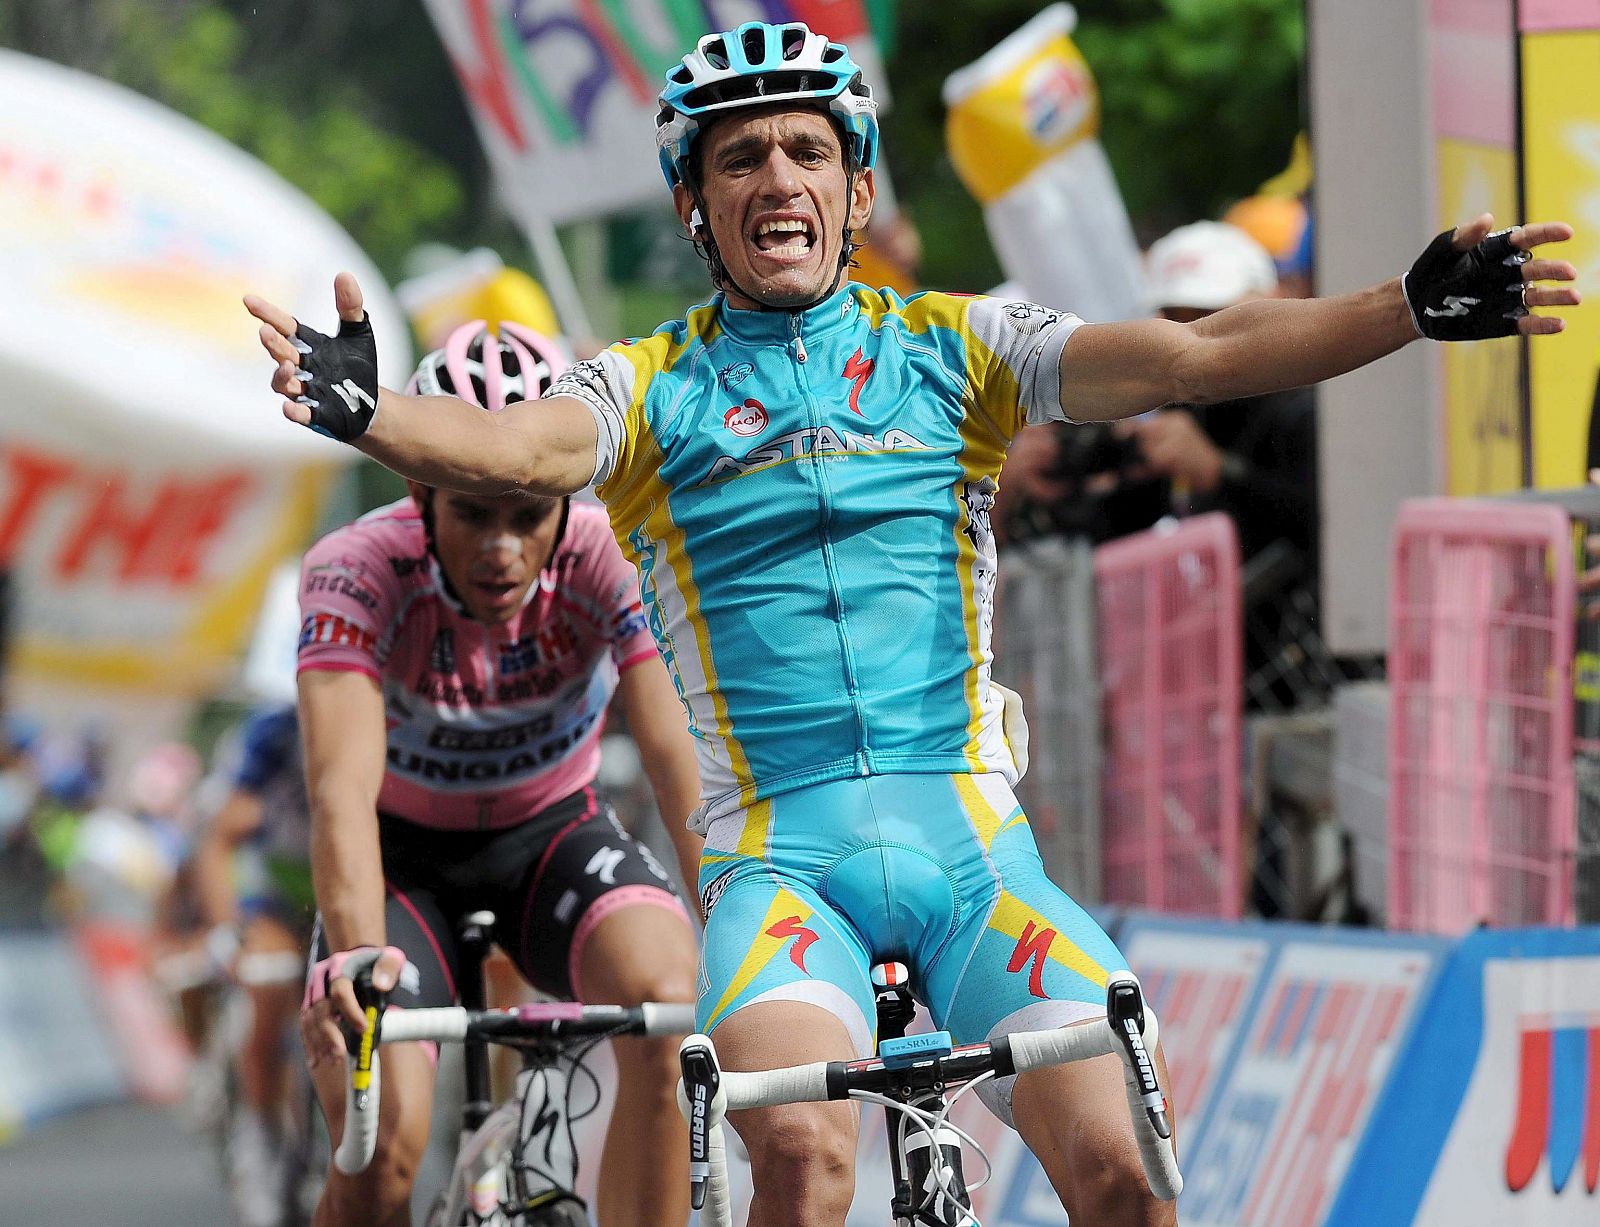 El ciclista italiano Paolo Tiralongo, del Astana, se impone al español Alberto Contador en la decimonovena etapa del Giro de Italia.